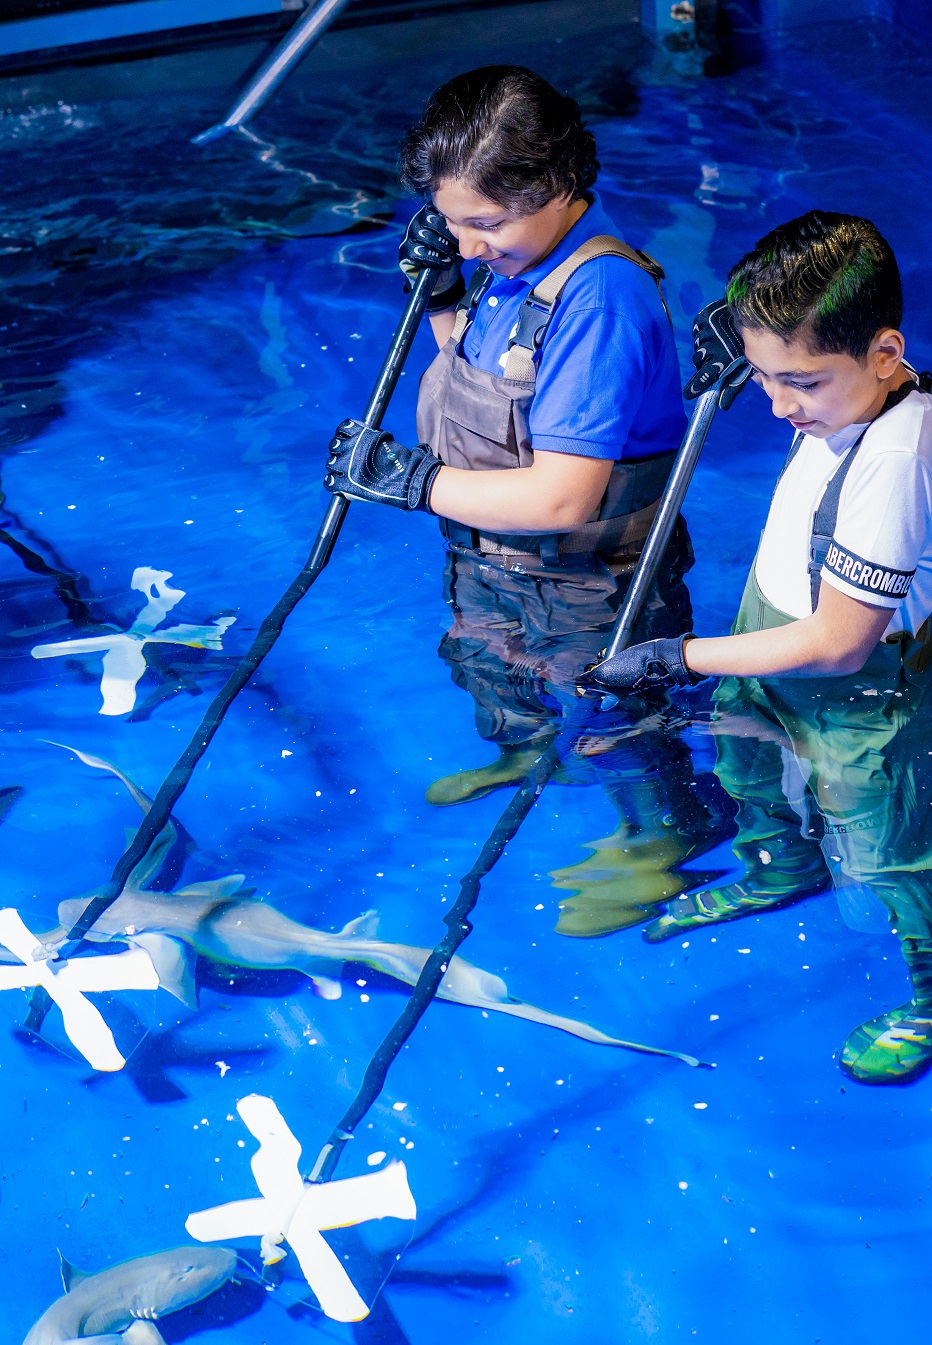 إنها فرصتكم لمشاهدة أسماك القرش عن قرب في دبي أكواريوم 